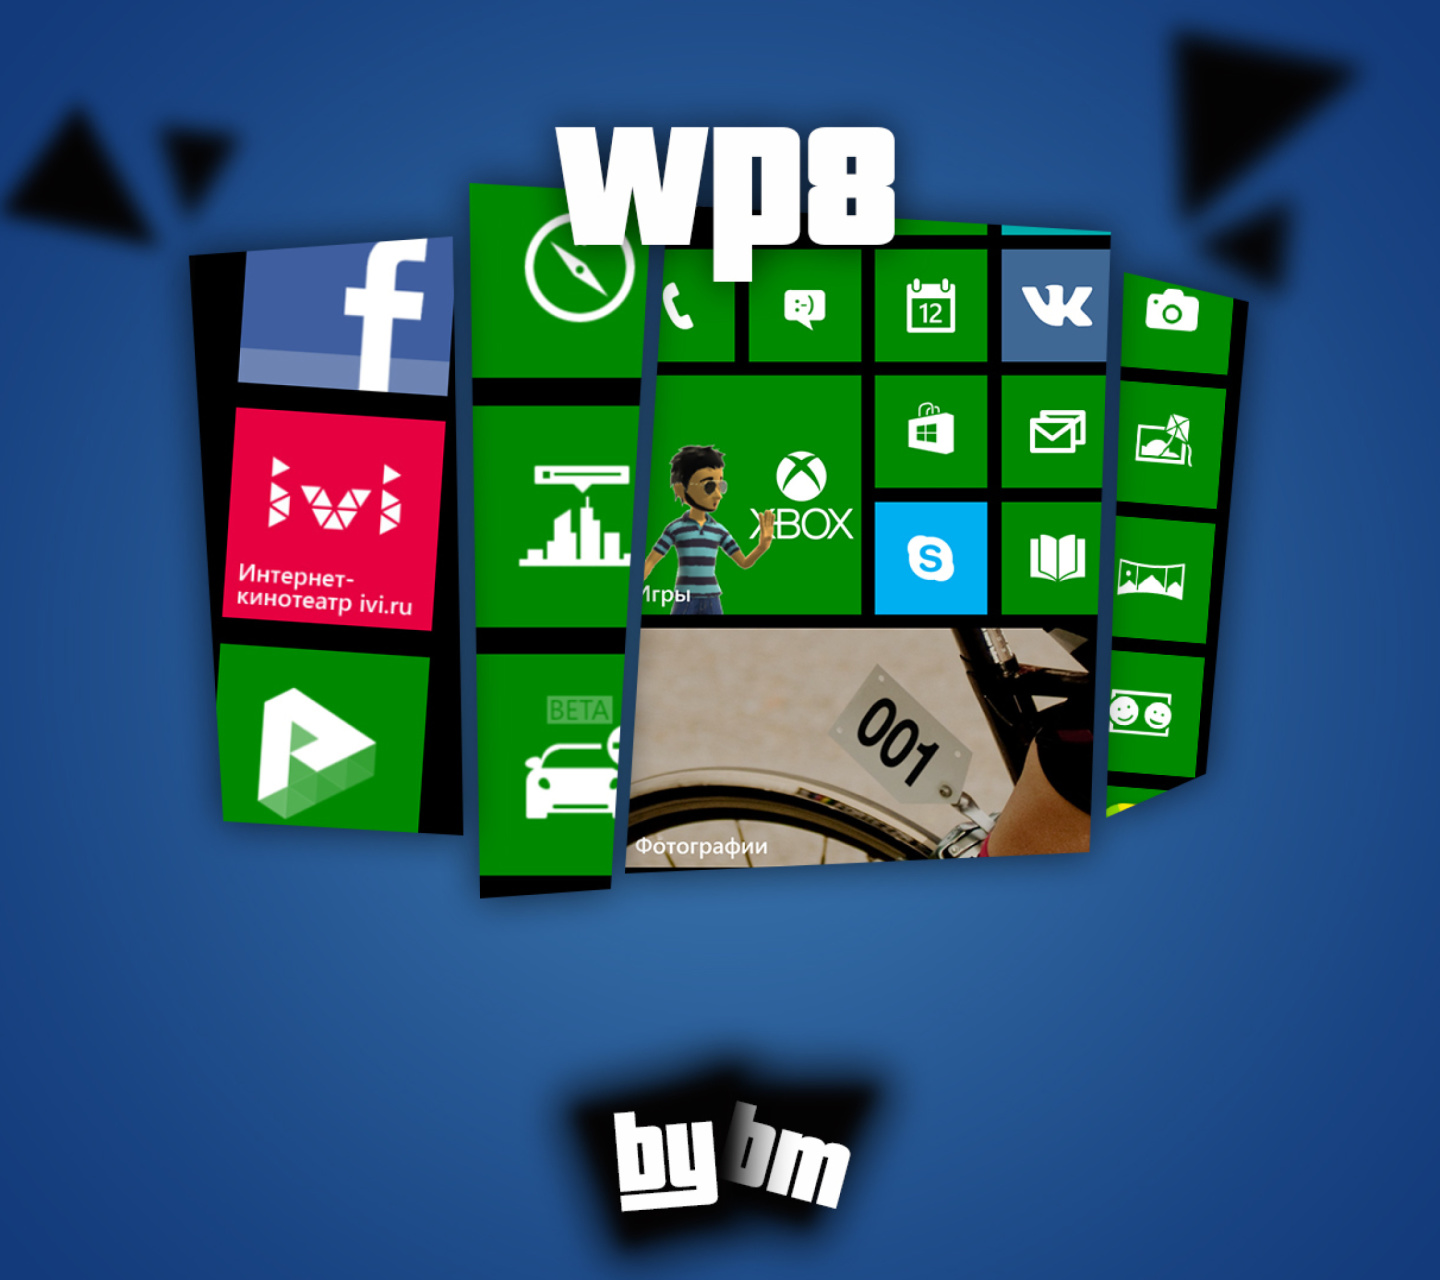 Fondo de pantalla Wp8, Windows Phone 8 1440x1280